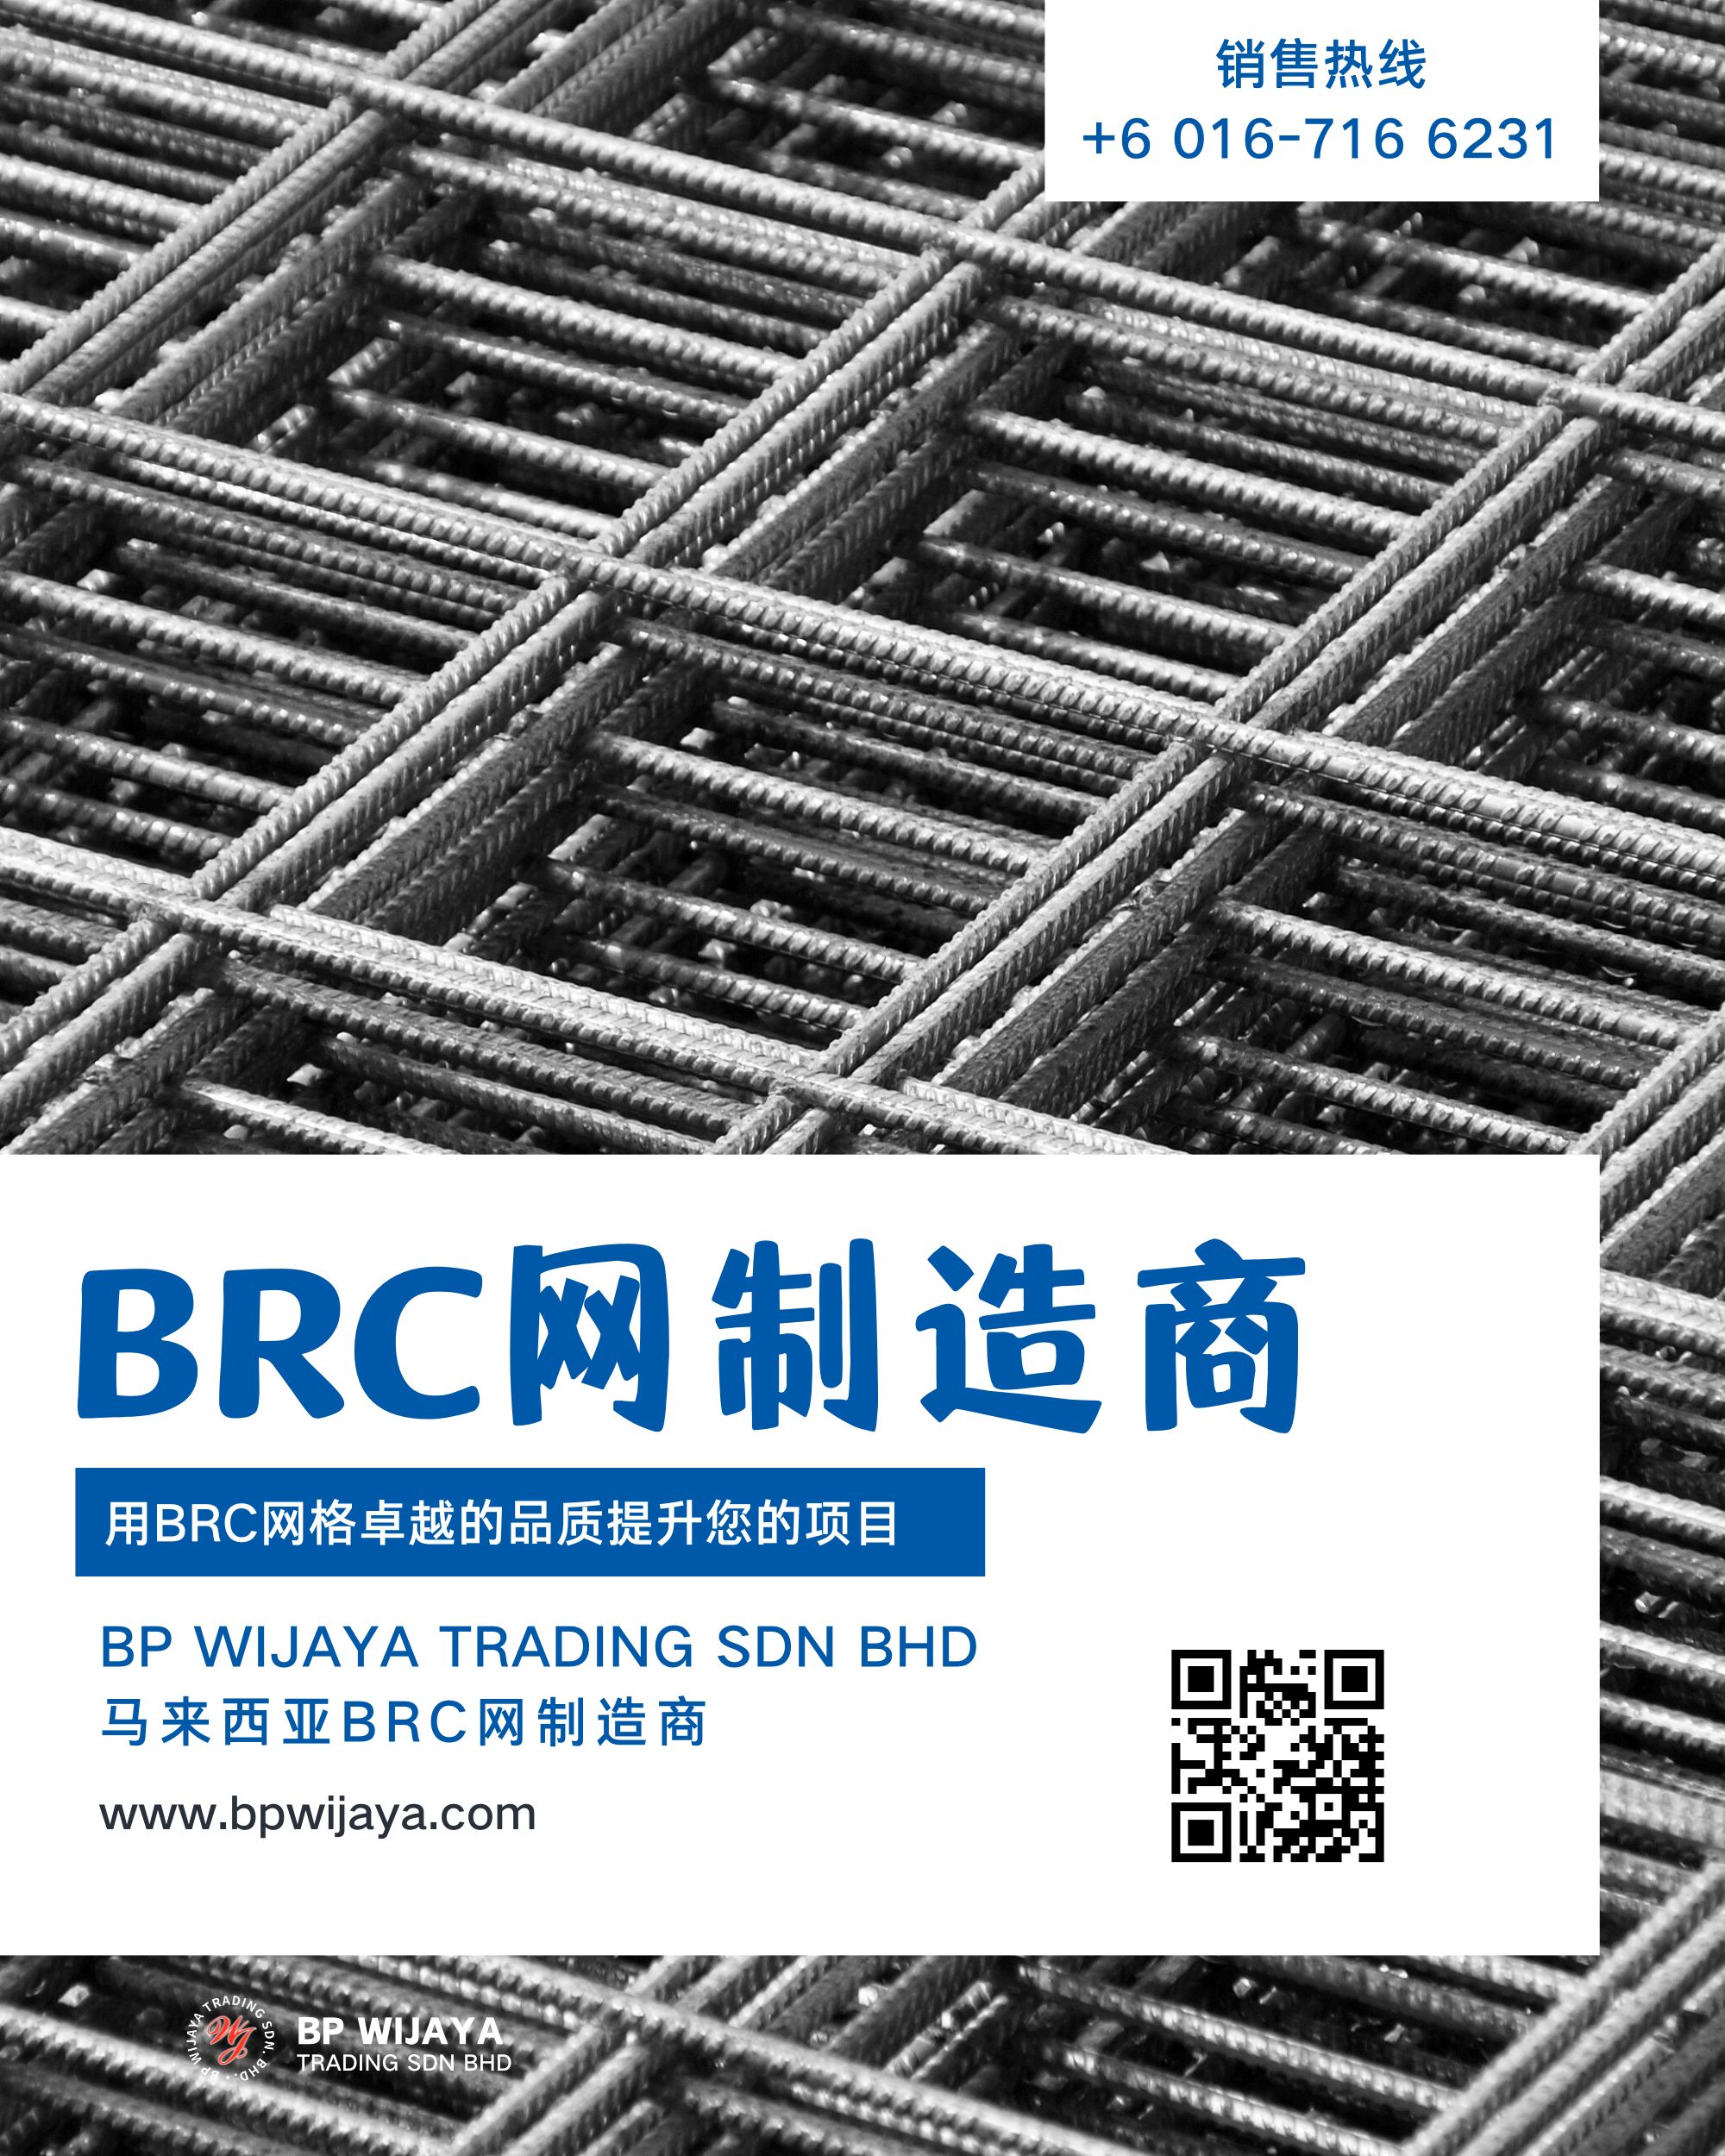 马来西亚BRC网制造商 BP Wijaya Trading Sdn Bhd Wire Mesh Manufacturer Malaysia 马来西亚制造的BRC网格